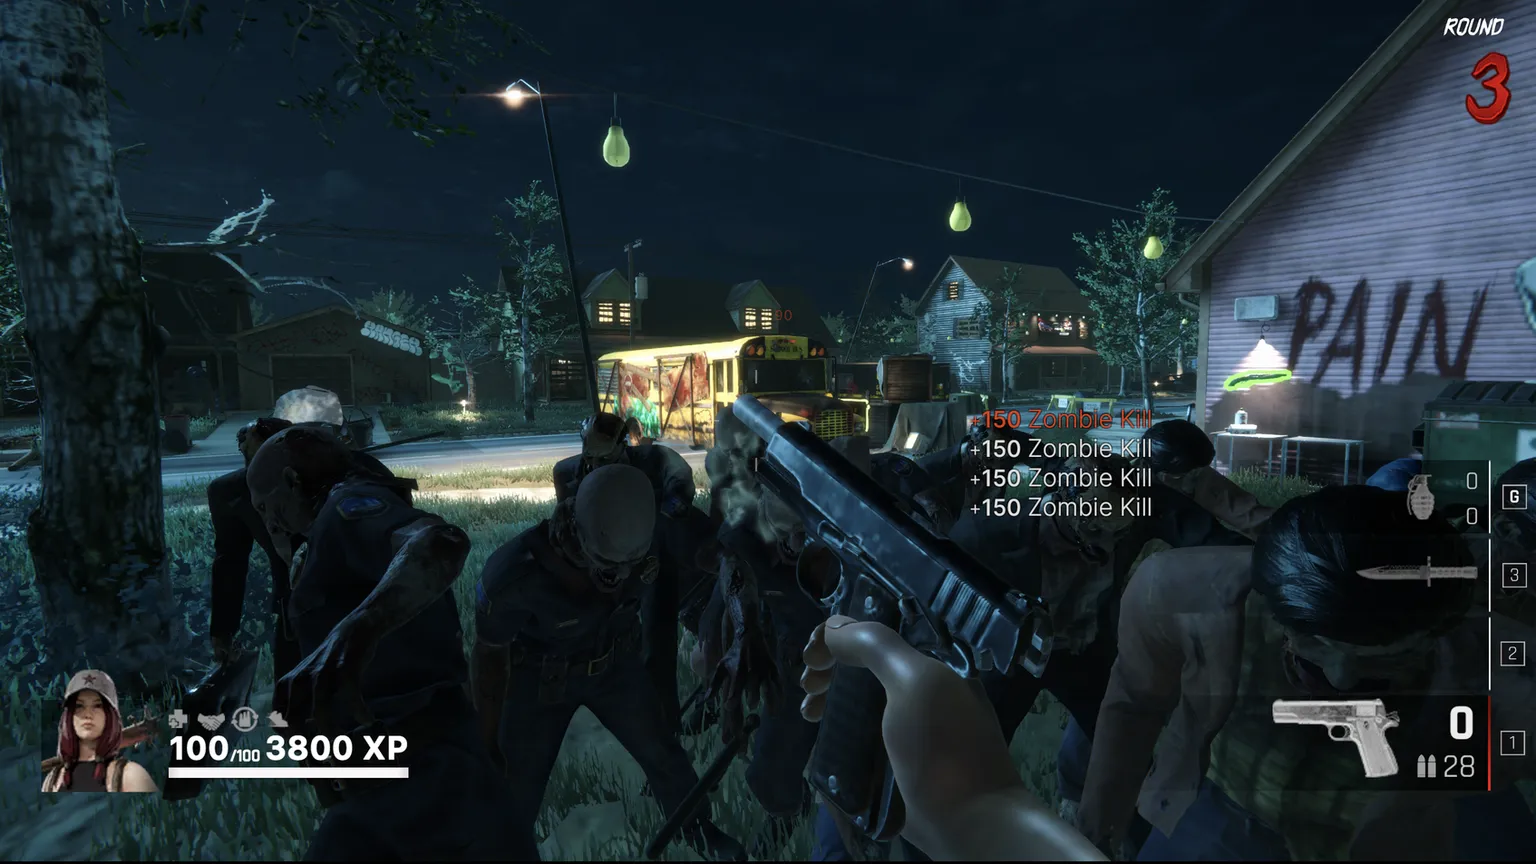 Captura de pantalla del juego Undead Blocks en la que se ve una horda de zombis rodeando a un jugador en primera persona con una pistola en la mano..